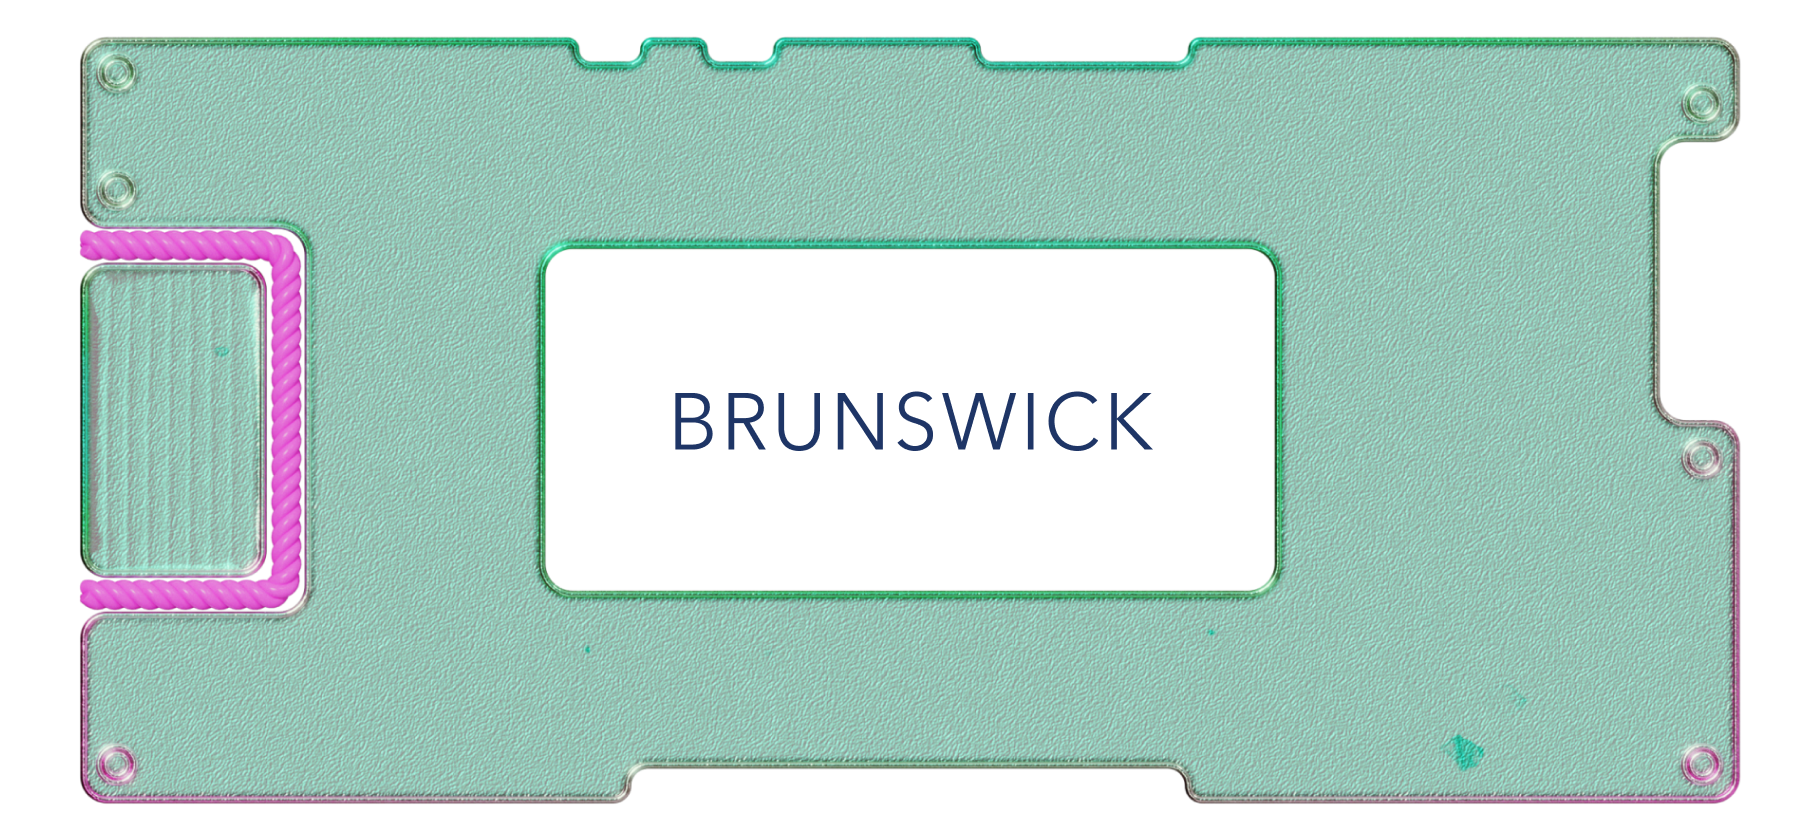 Обзор Brunswick: производитель яхт и моторных лодок